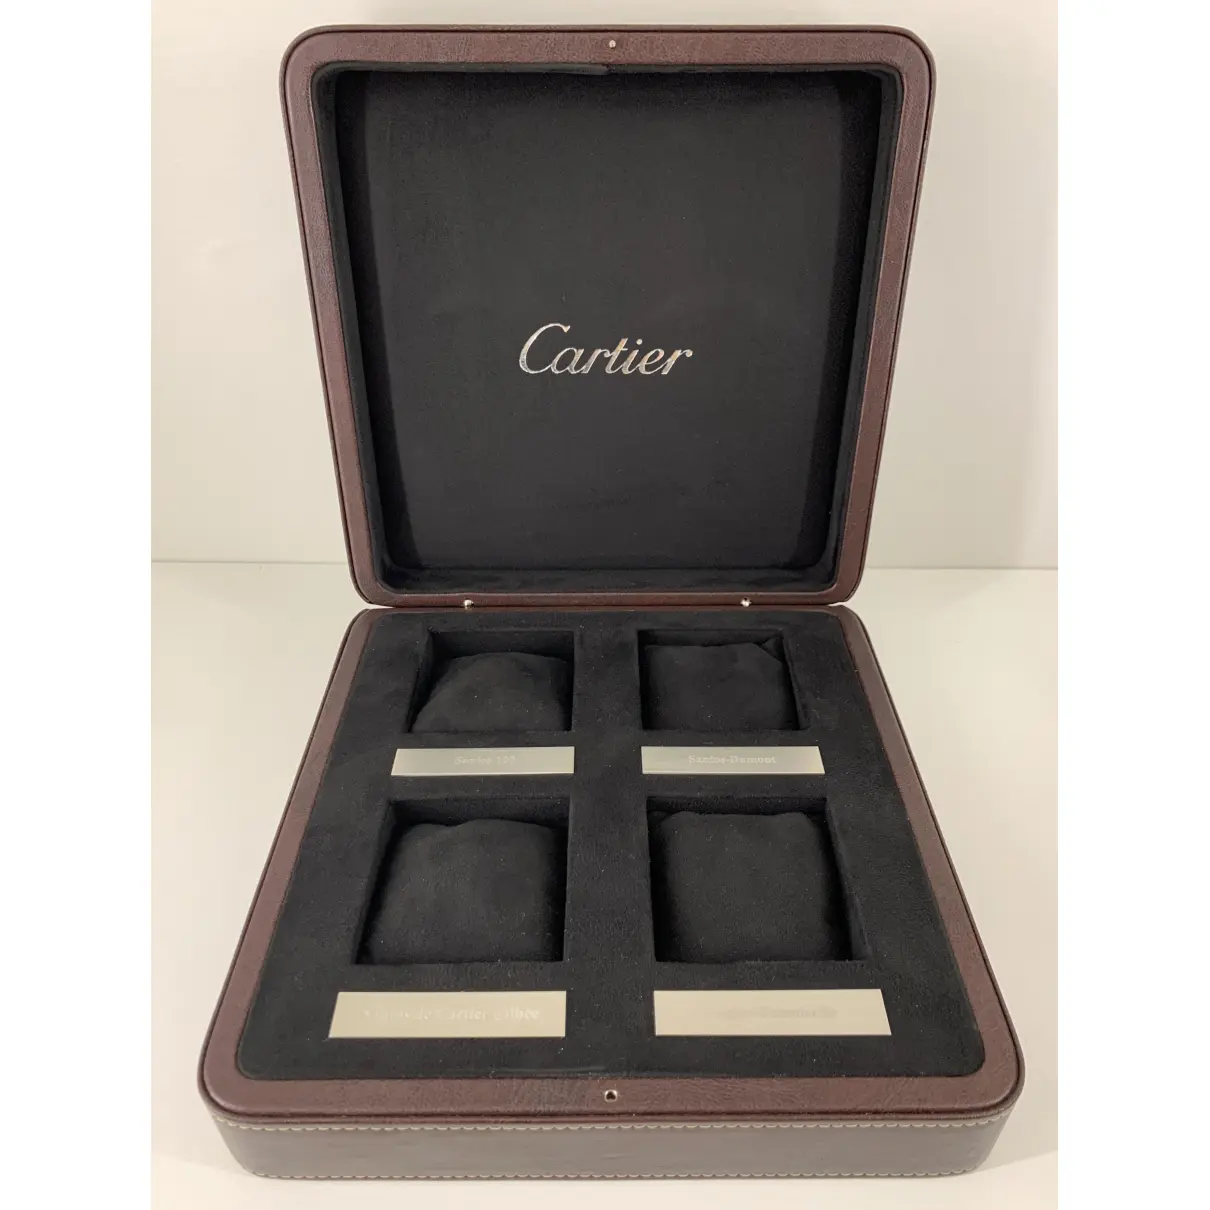 Buy Cartier Leather clock online